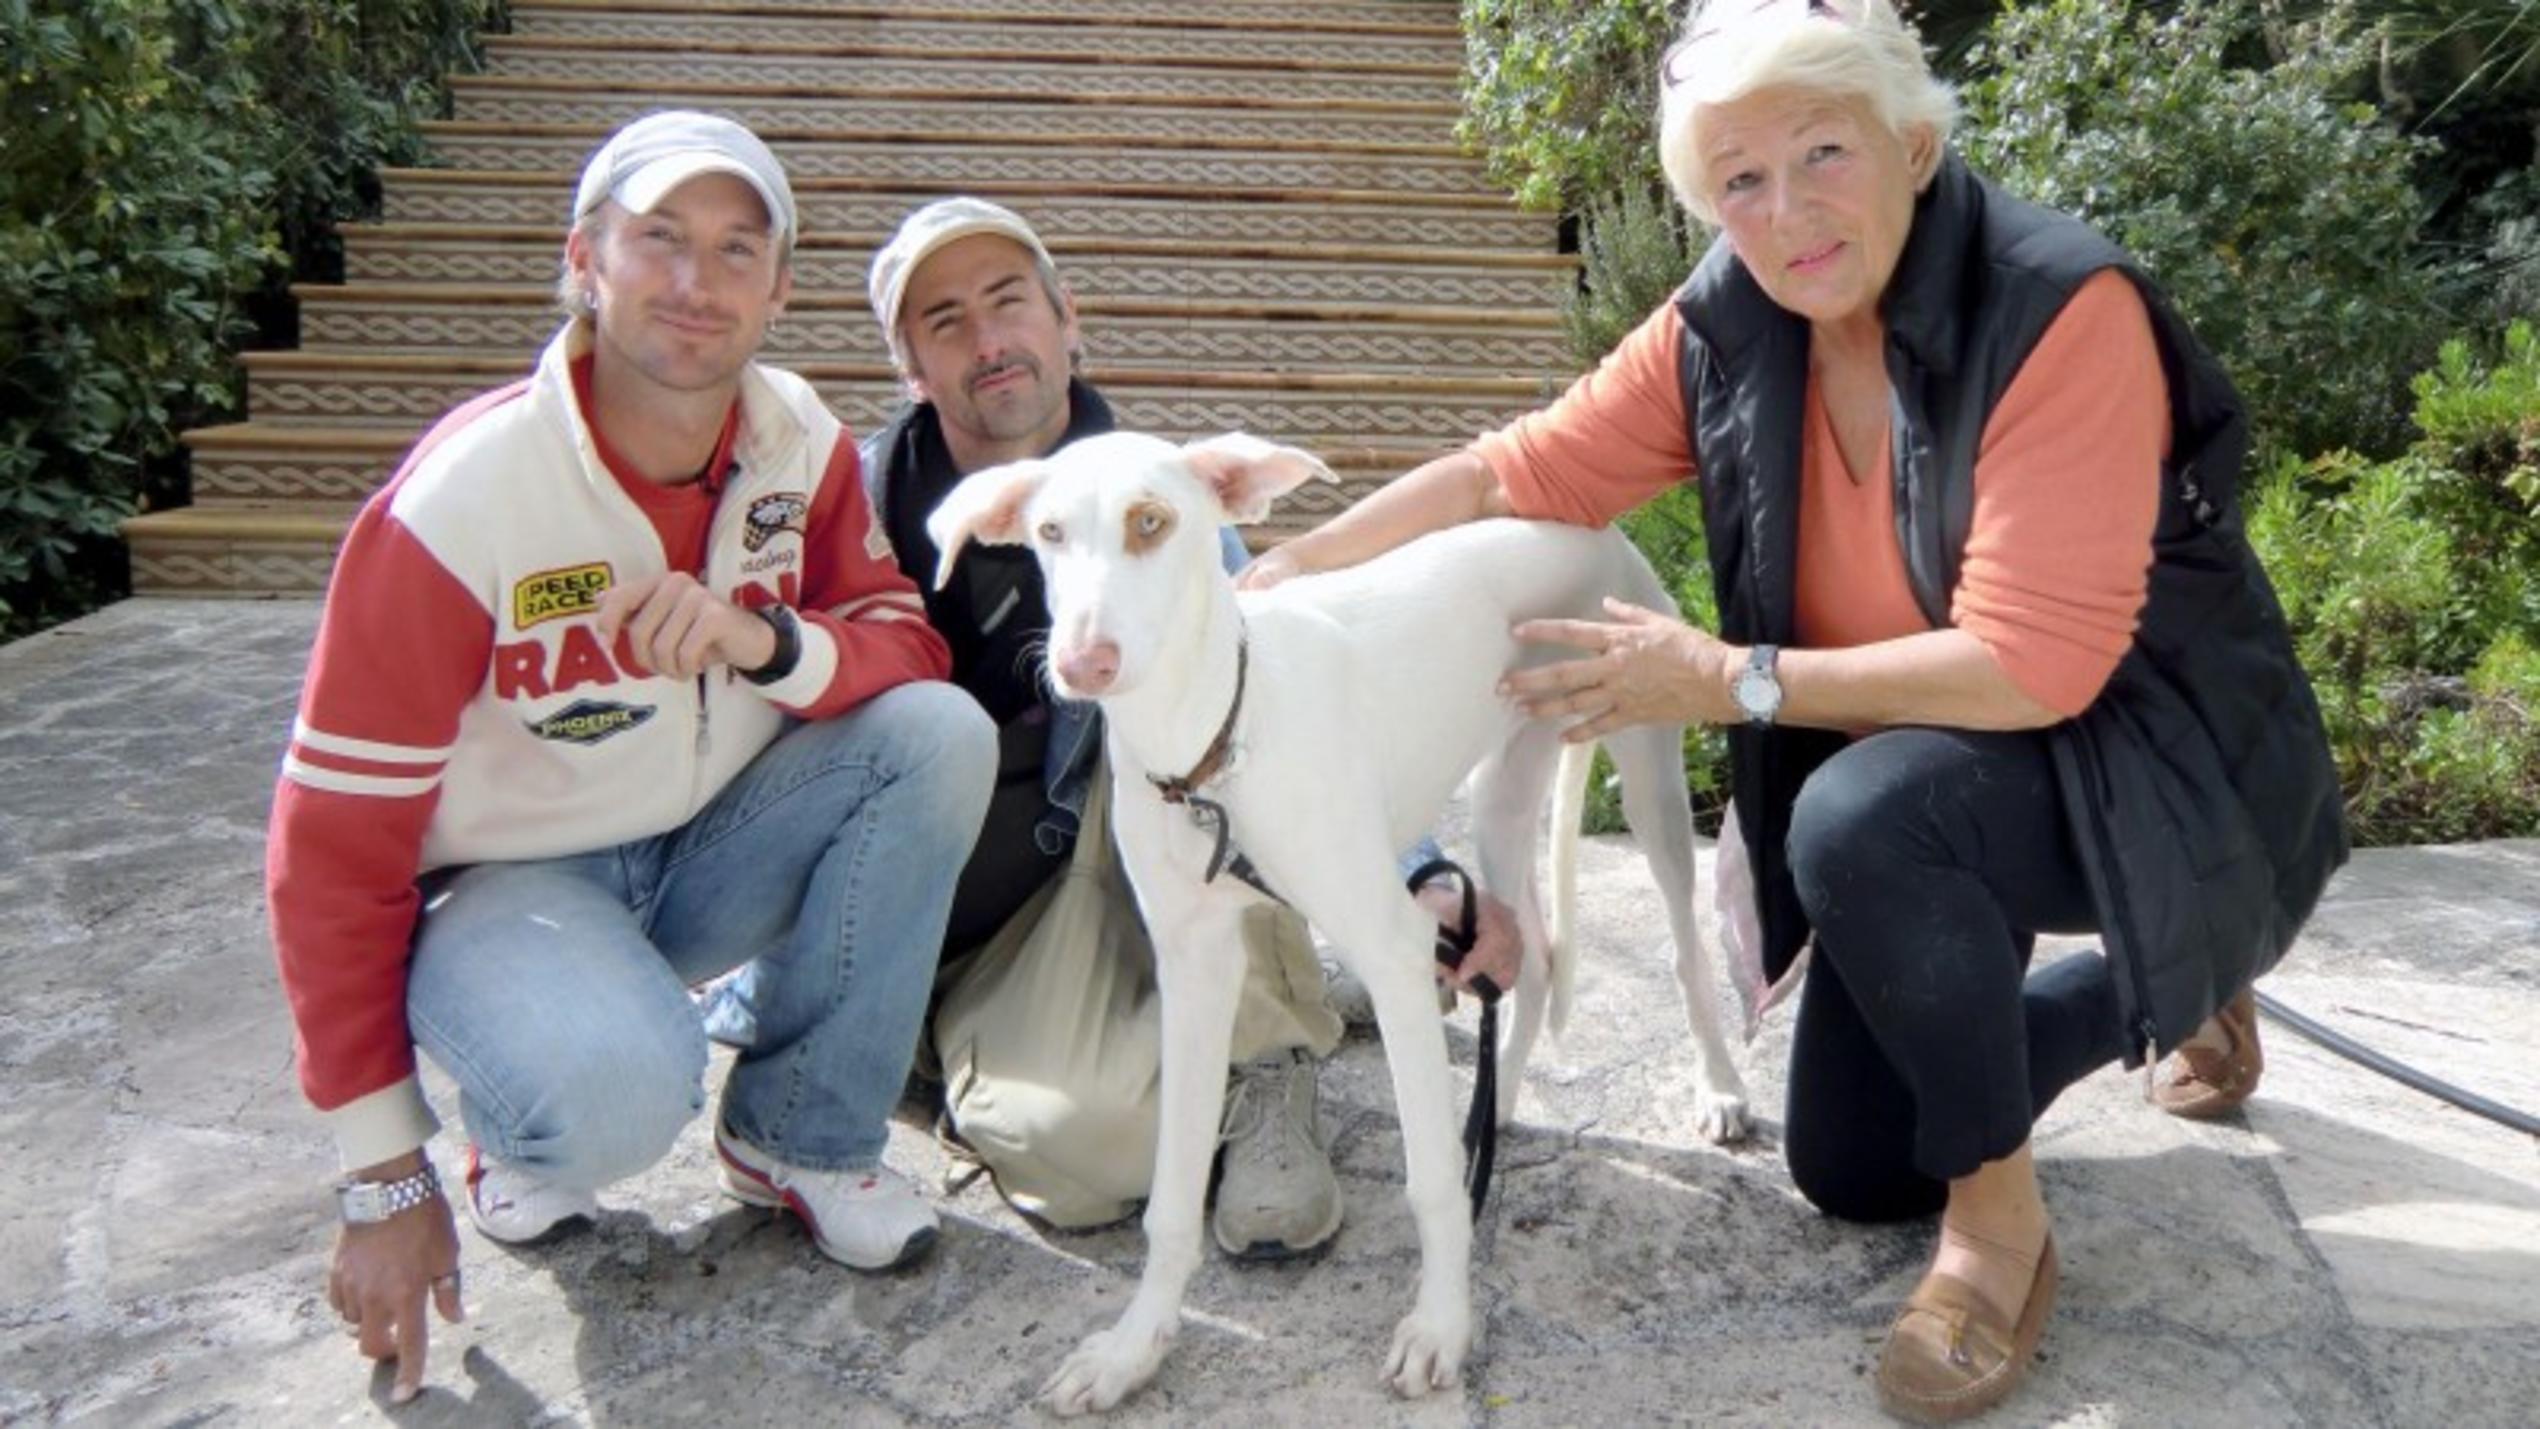 René Marichal-Navarro (35) und Stefan Track (39) helfen einer deutschen Residentin, die aus gesundheitlichen Gründen nach Berlin zurückkehren muss und ihren Hund nicht mitnehmen kann. Foto: VOX/DOCMA TV